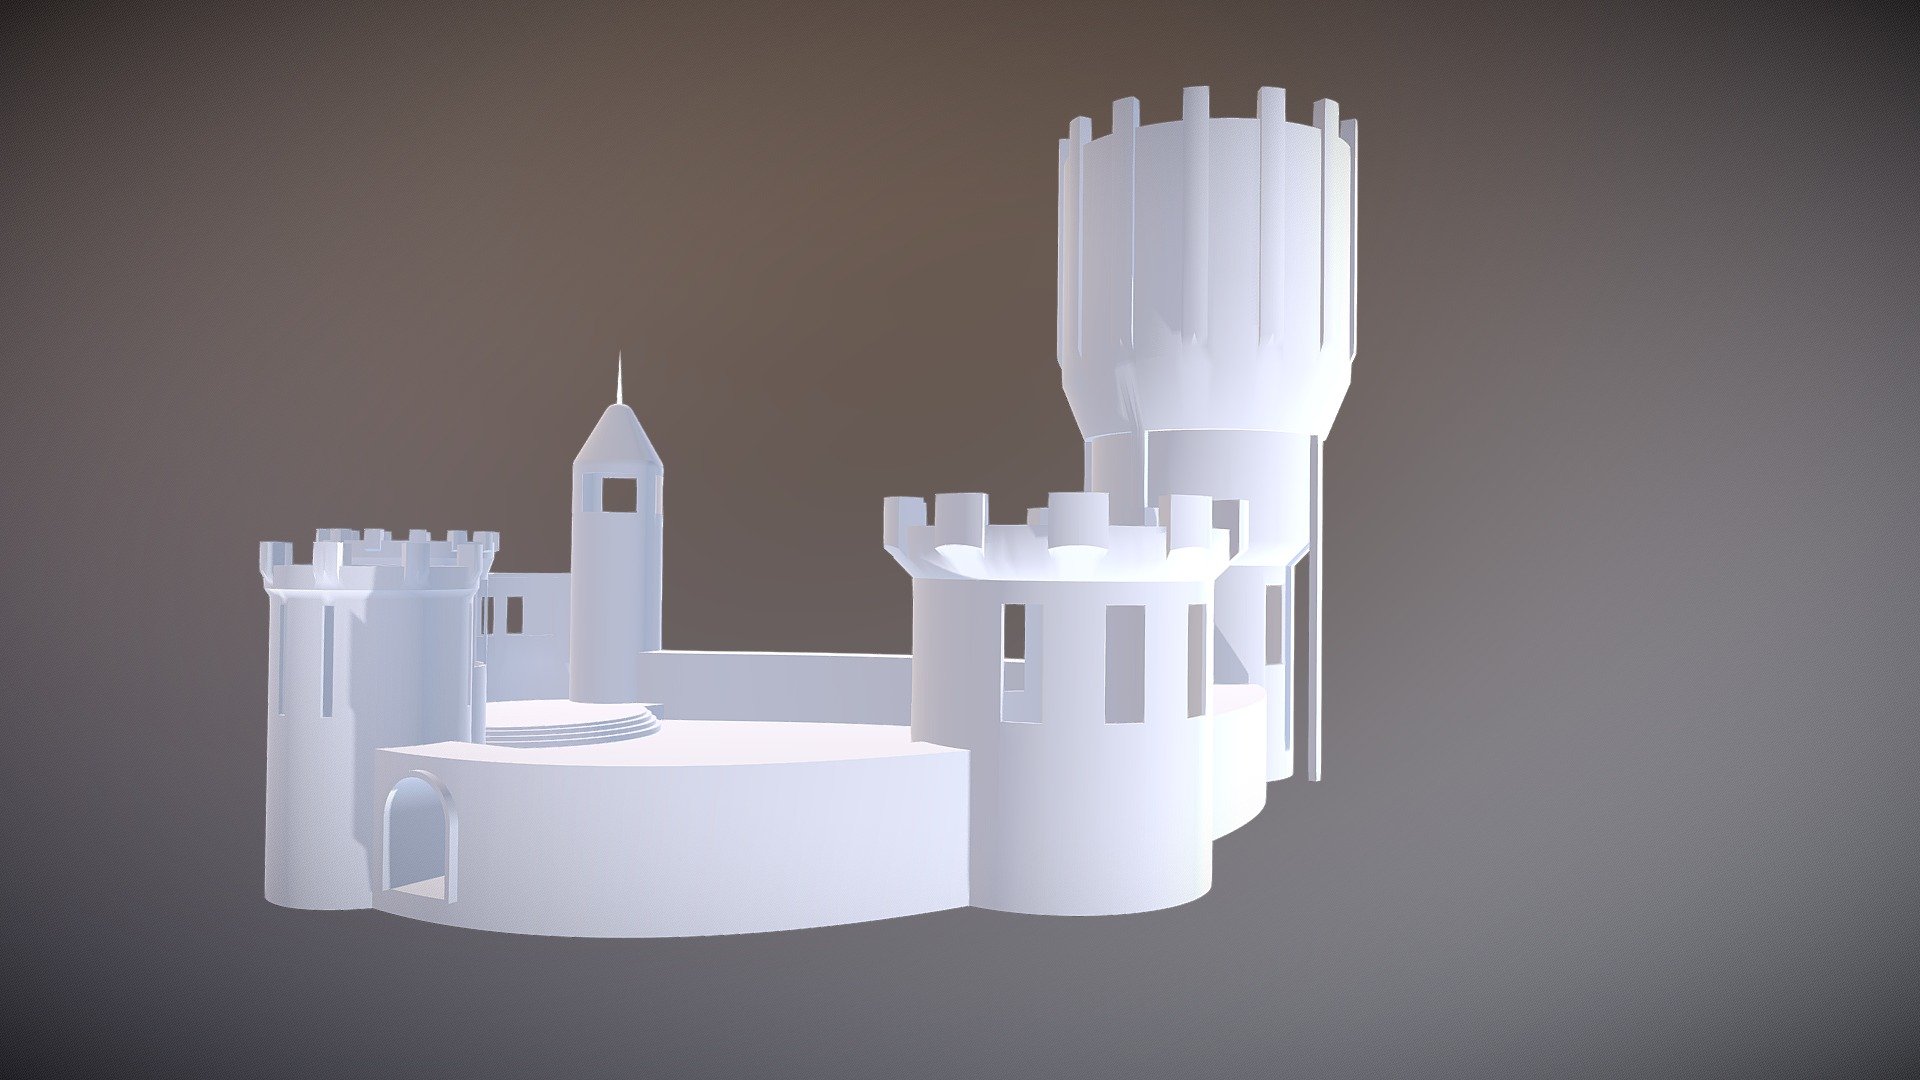 castle model test concept.